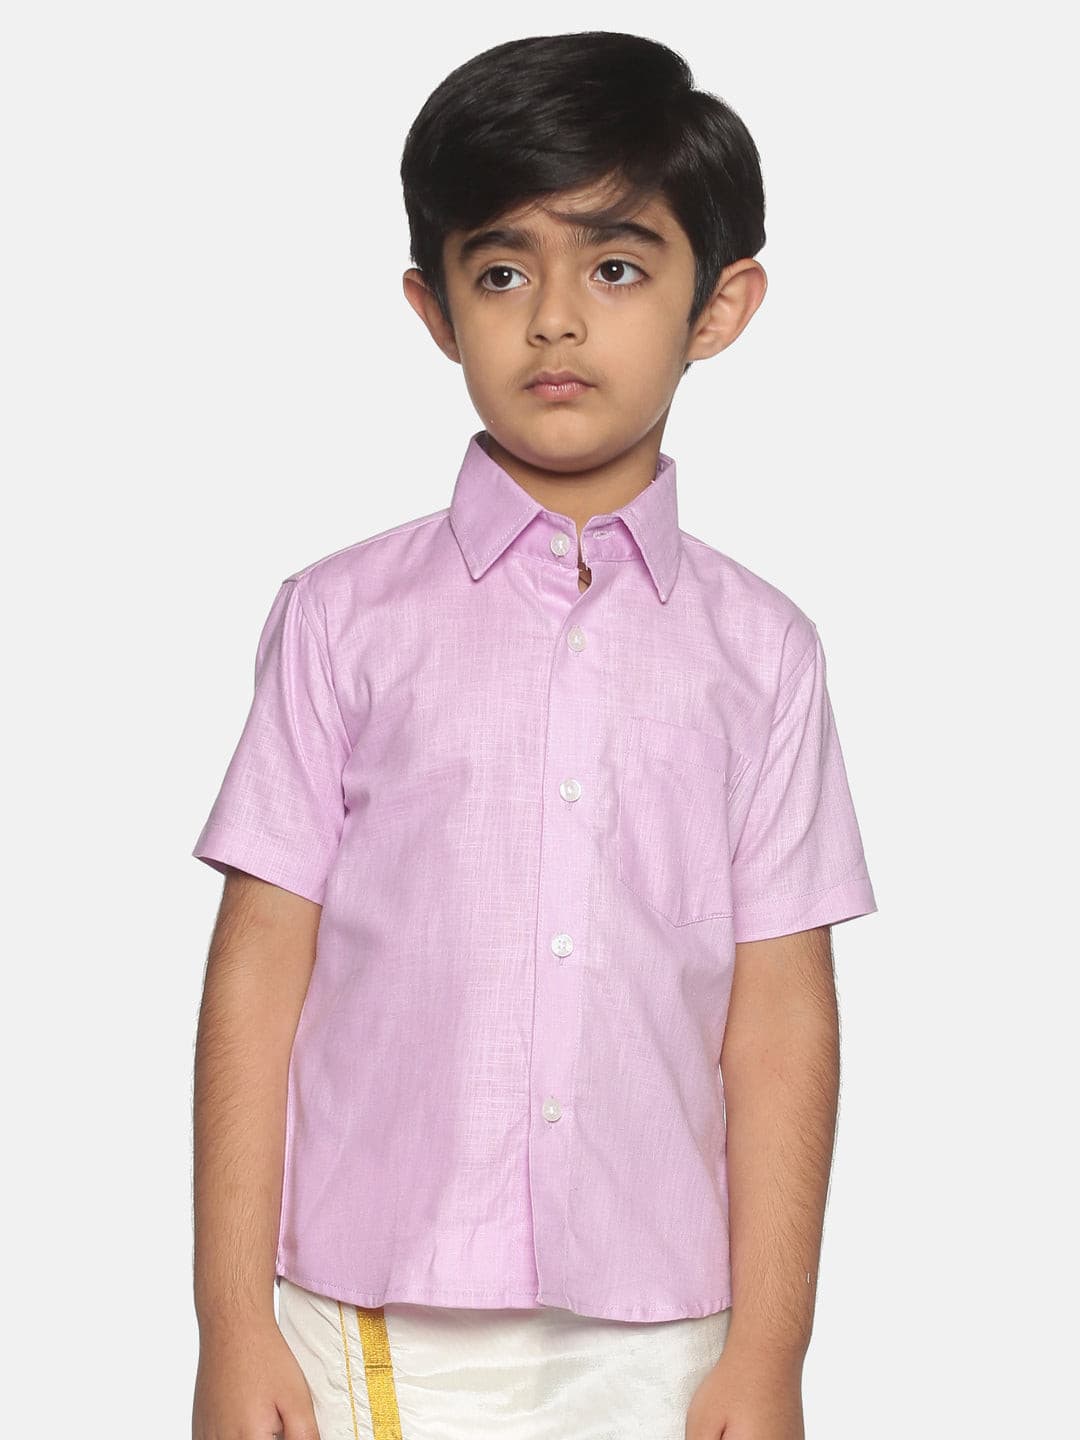 Boys Pink Colour Cotton Shirt